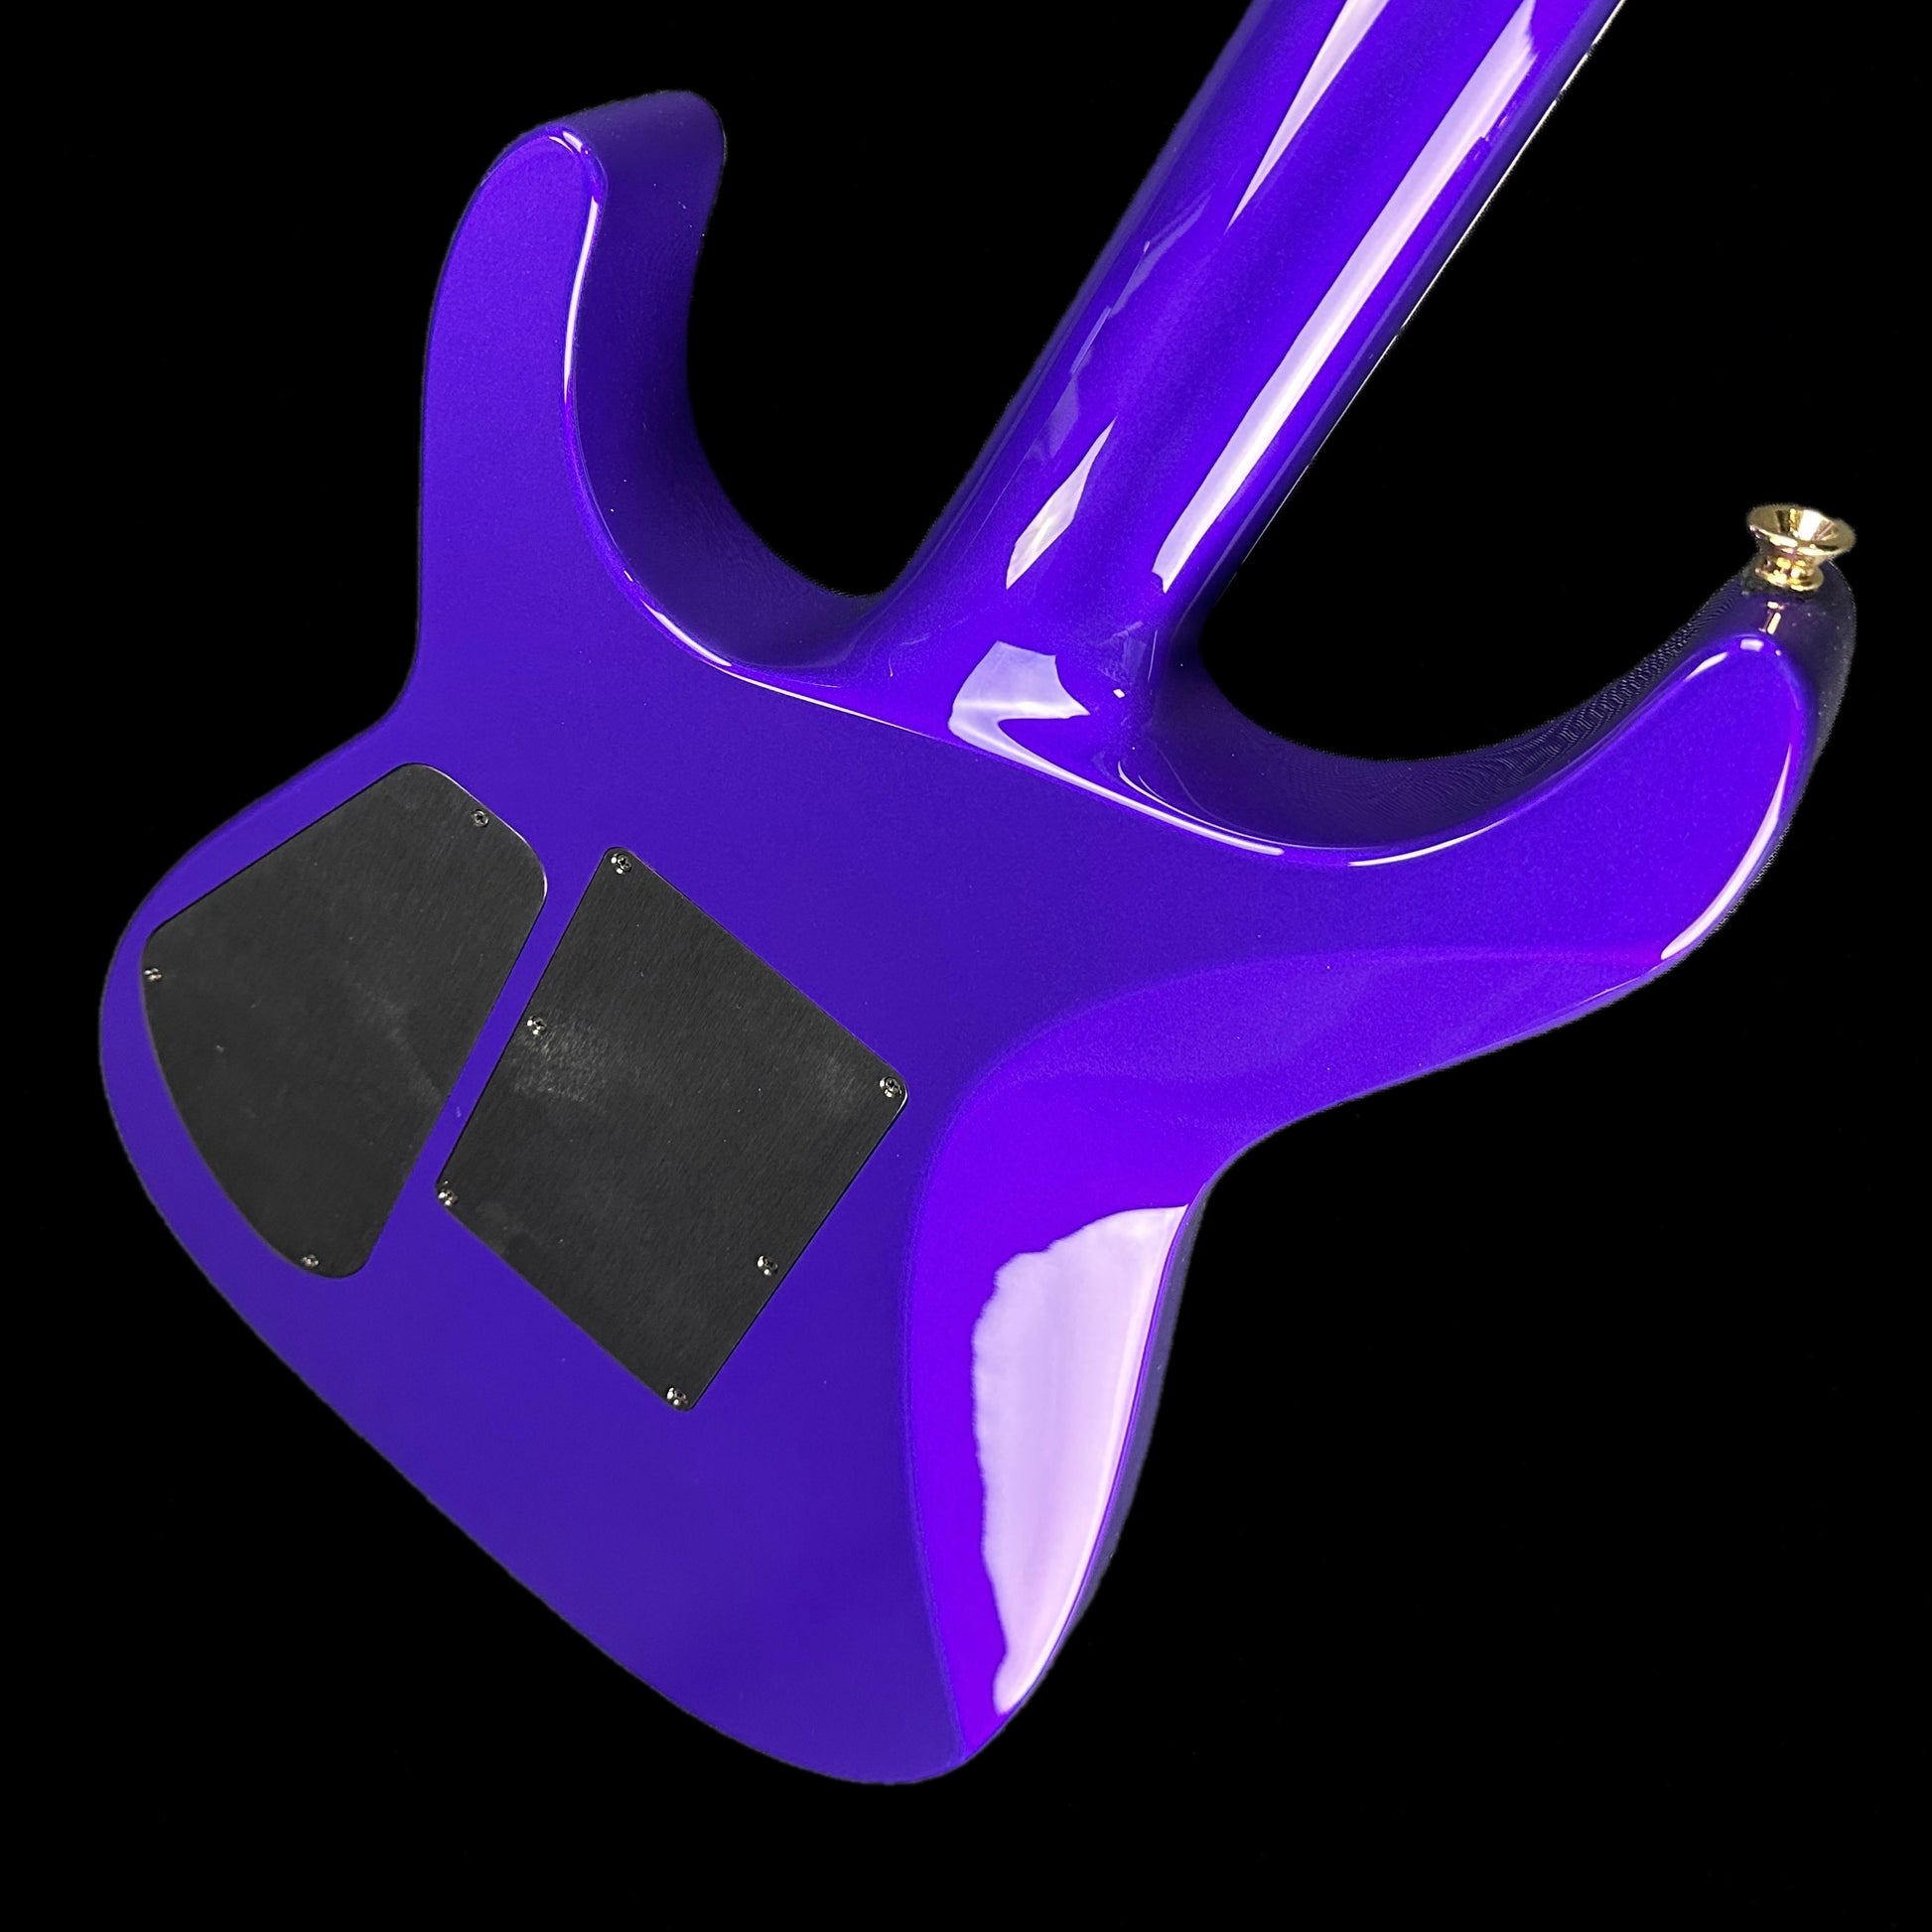 Back angle of Jackson Custom Shop SL 2H Floyd Rose Purple Metallic.